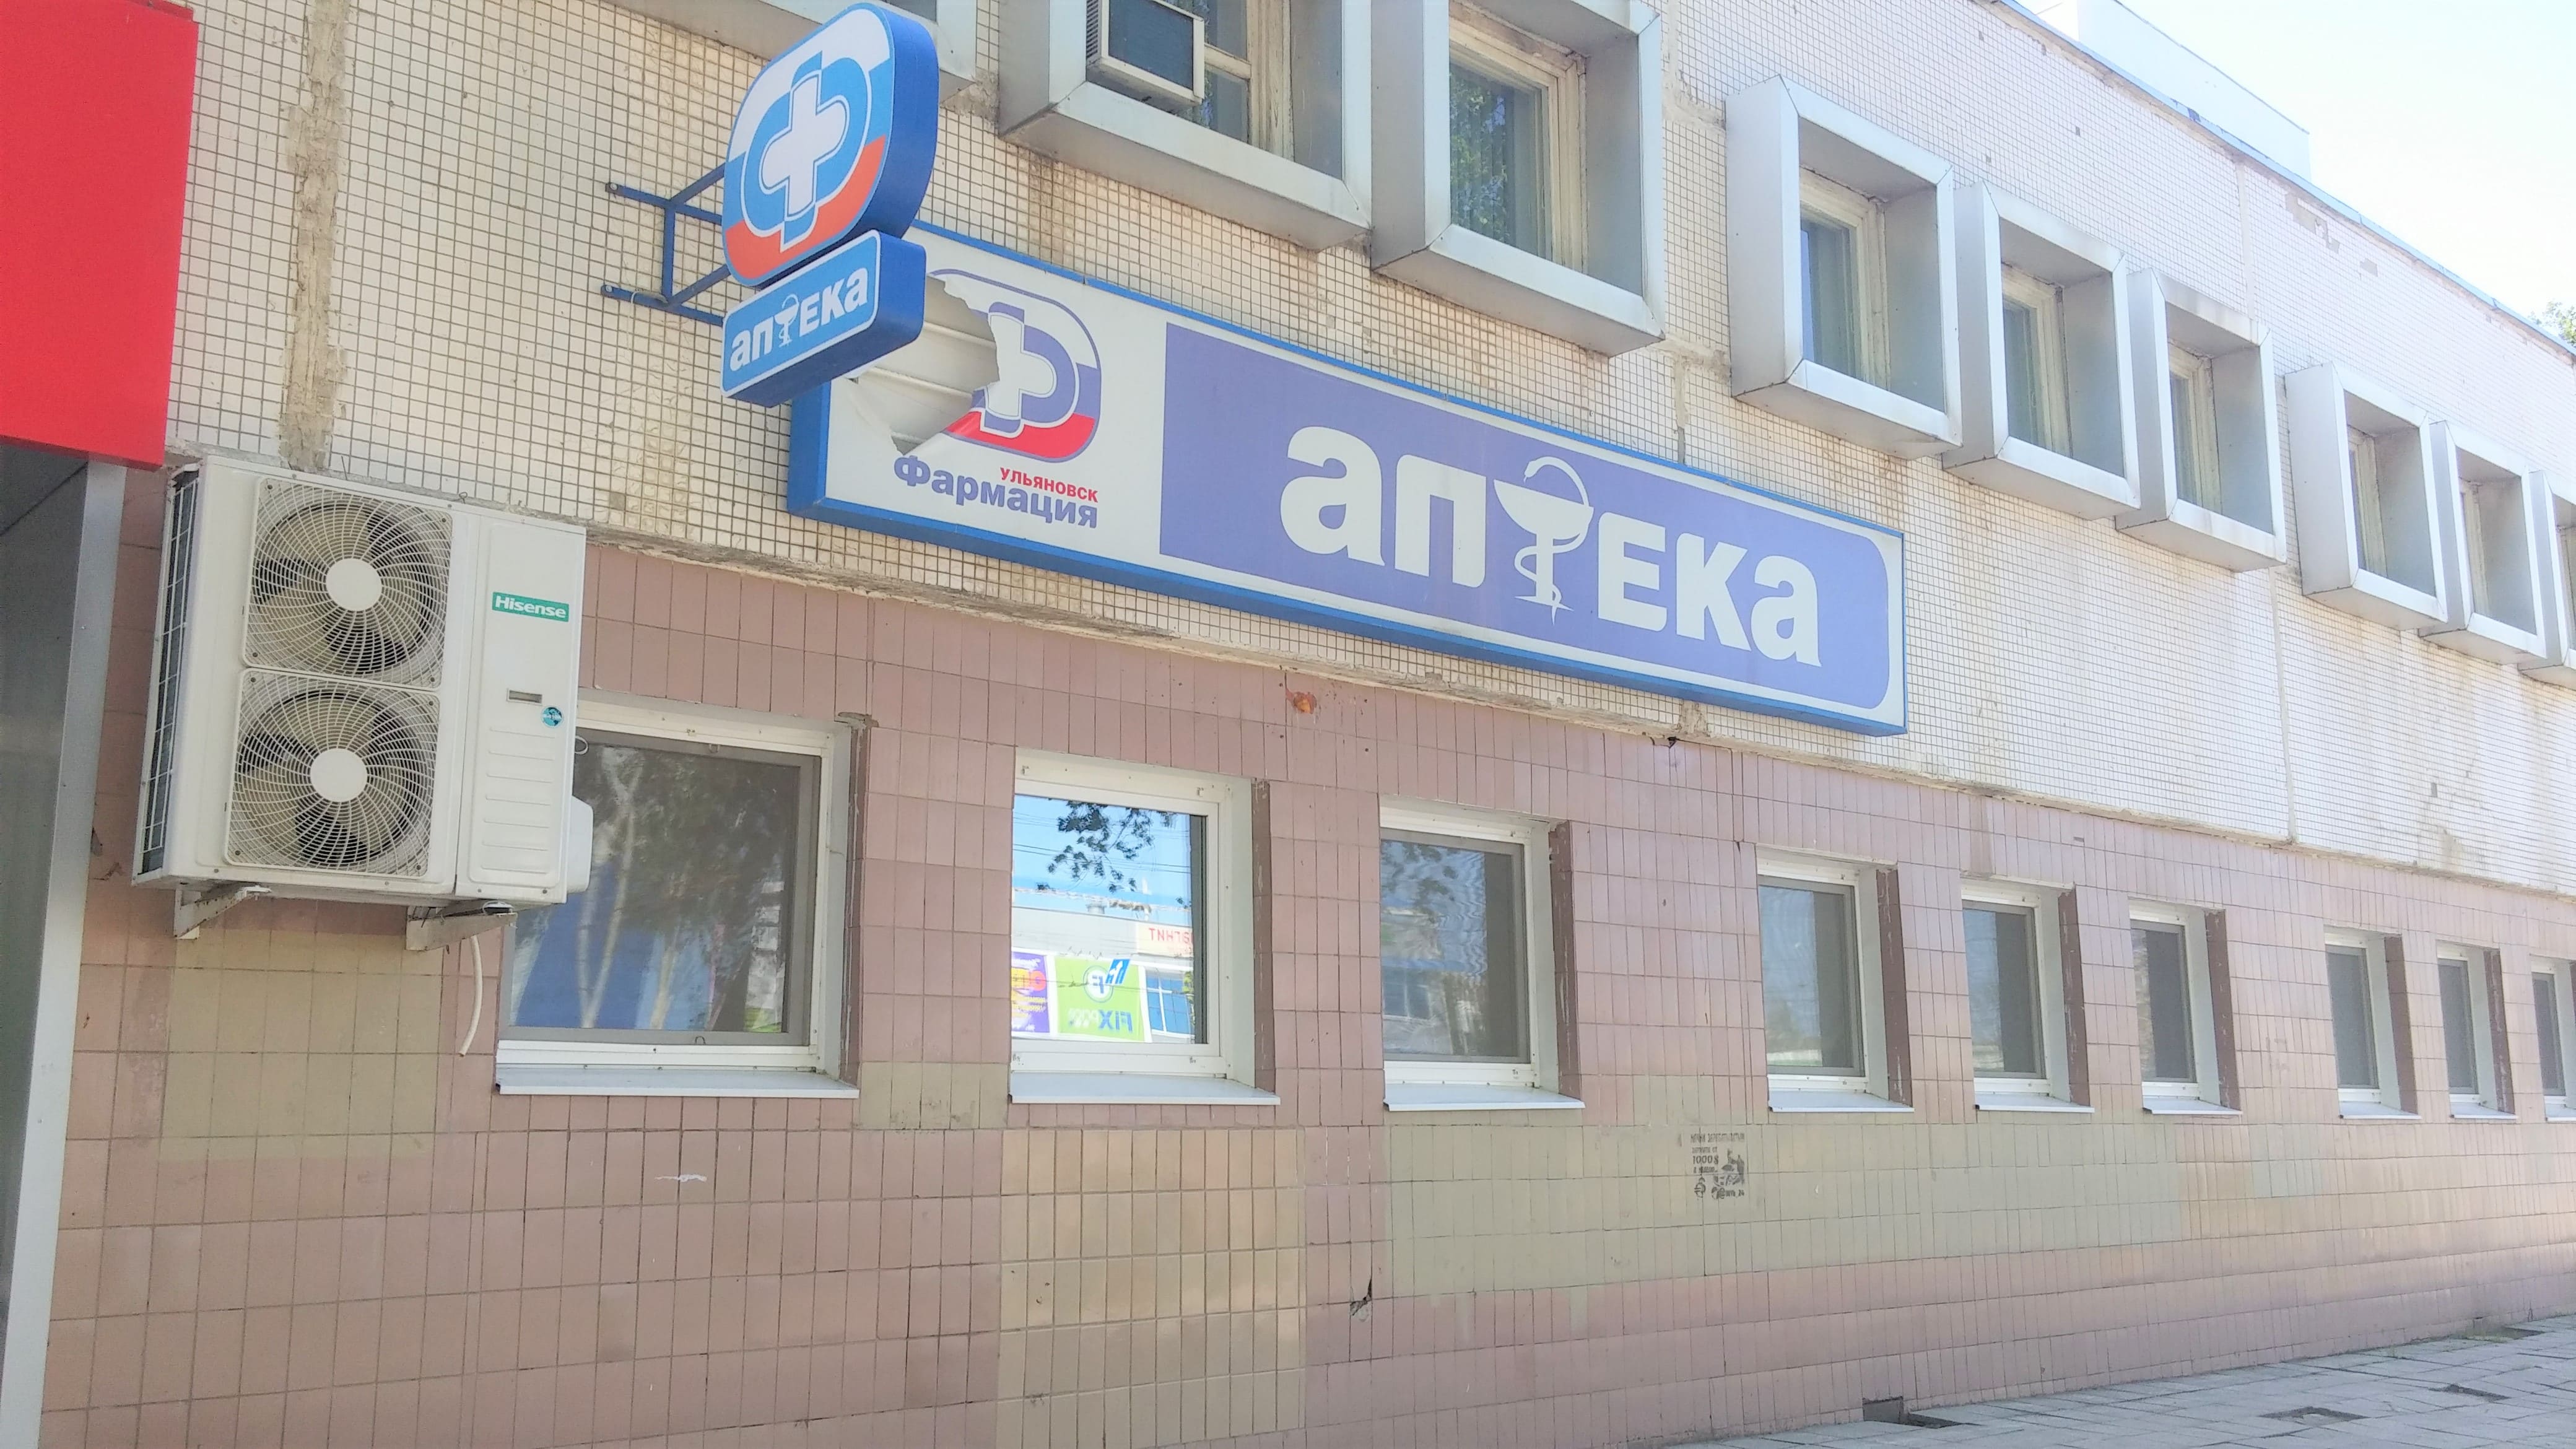 Ульяновская Государственная Аптека Ульяновск